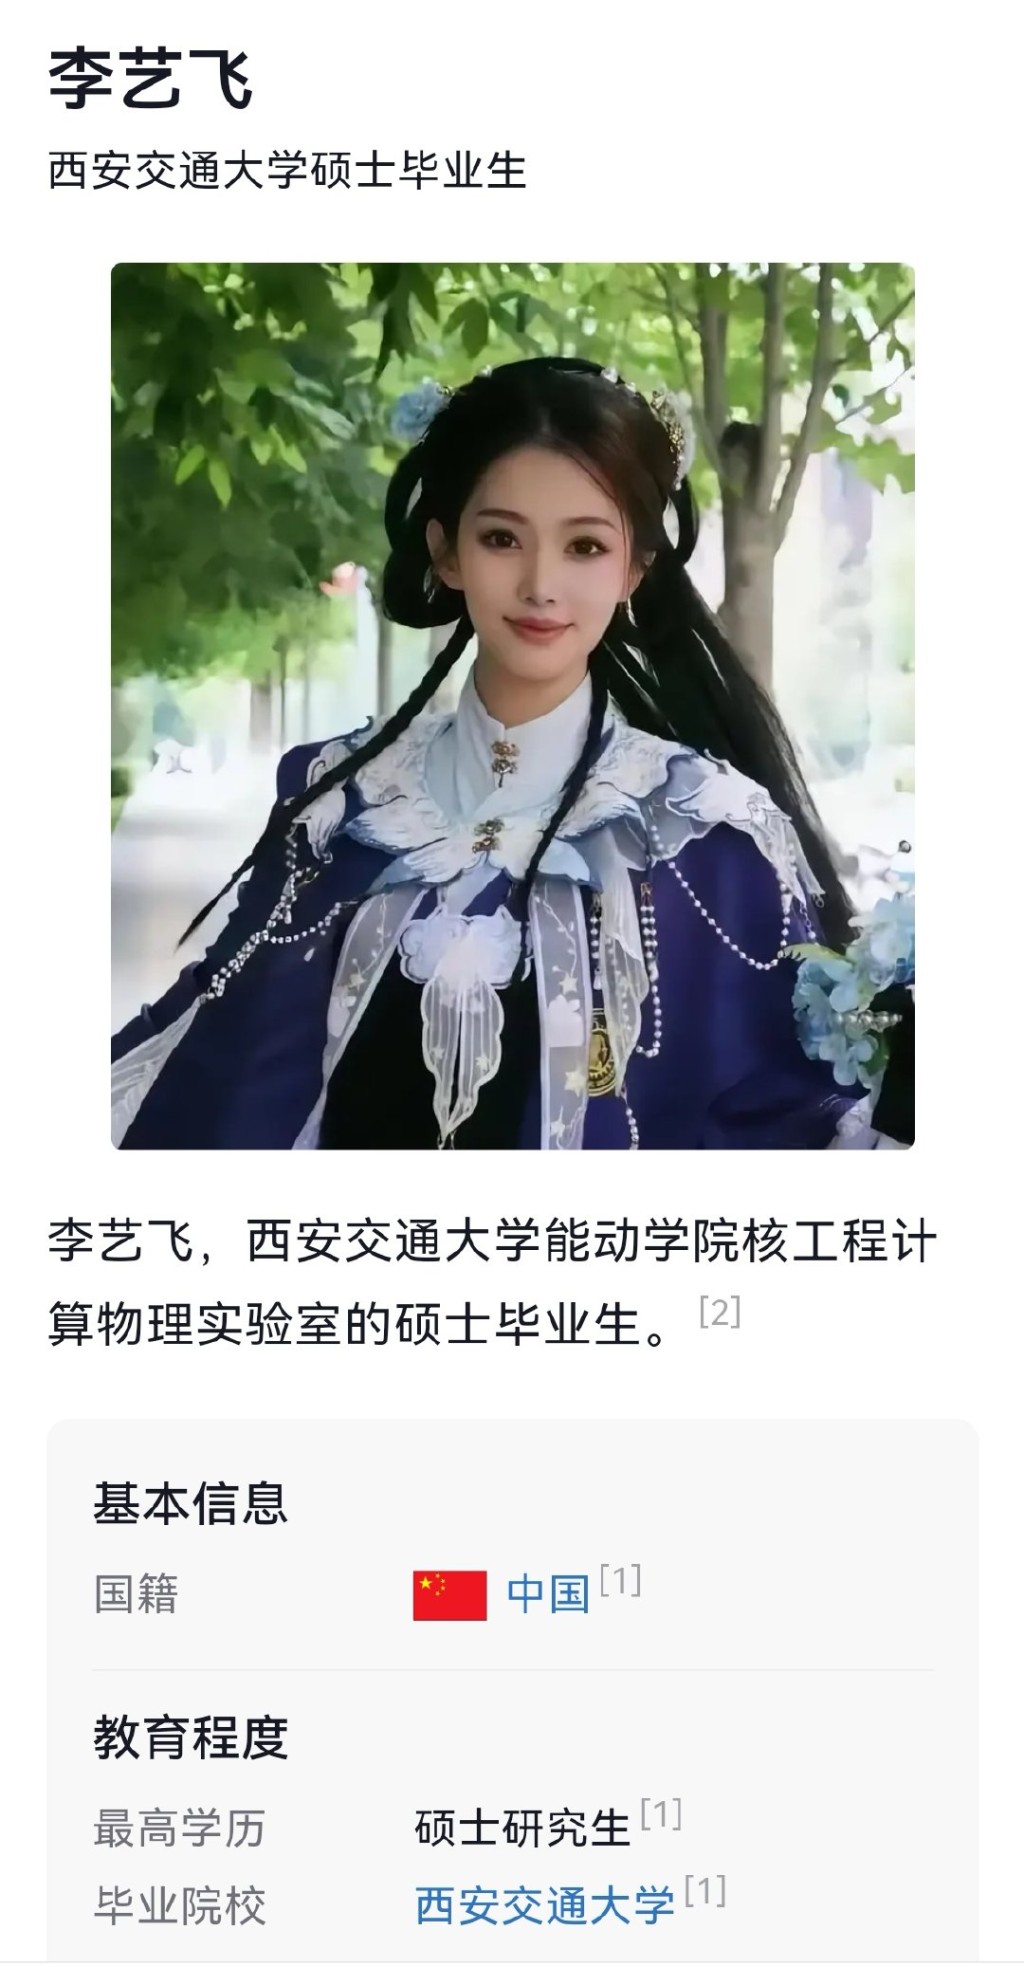 有網友實名舉報李藝飛與西安交大副校長長期保持不正當關係。